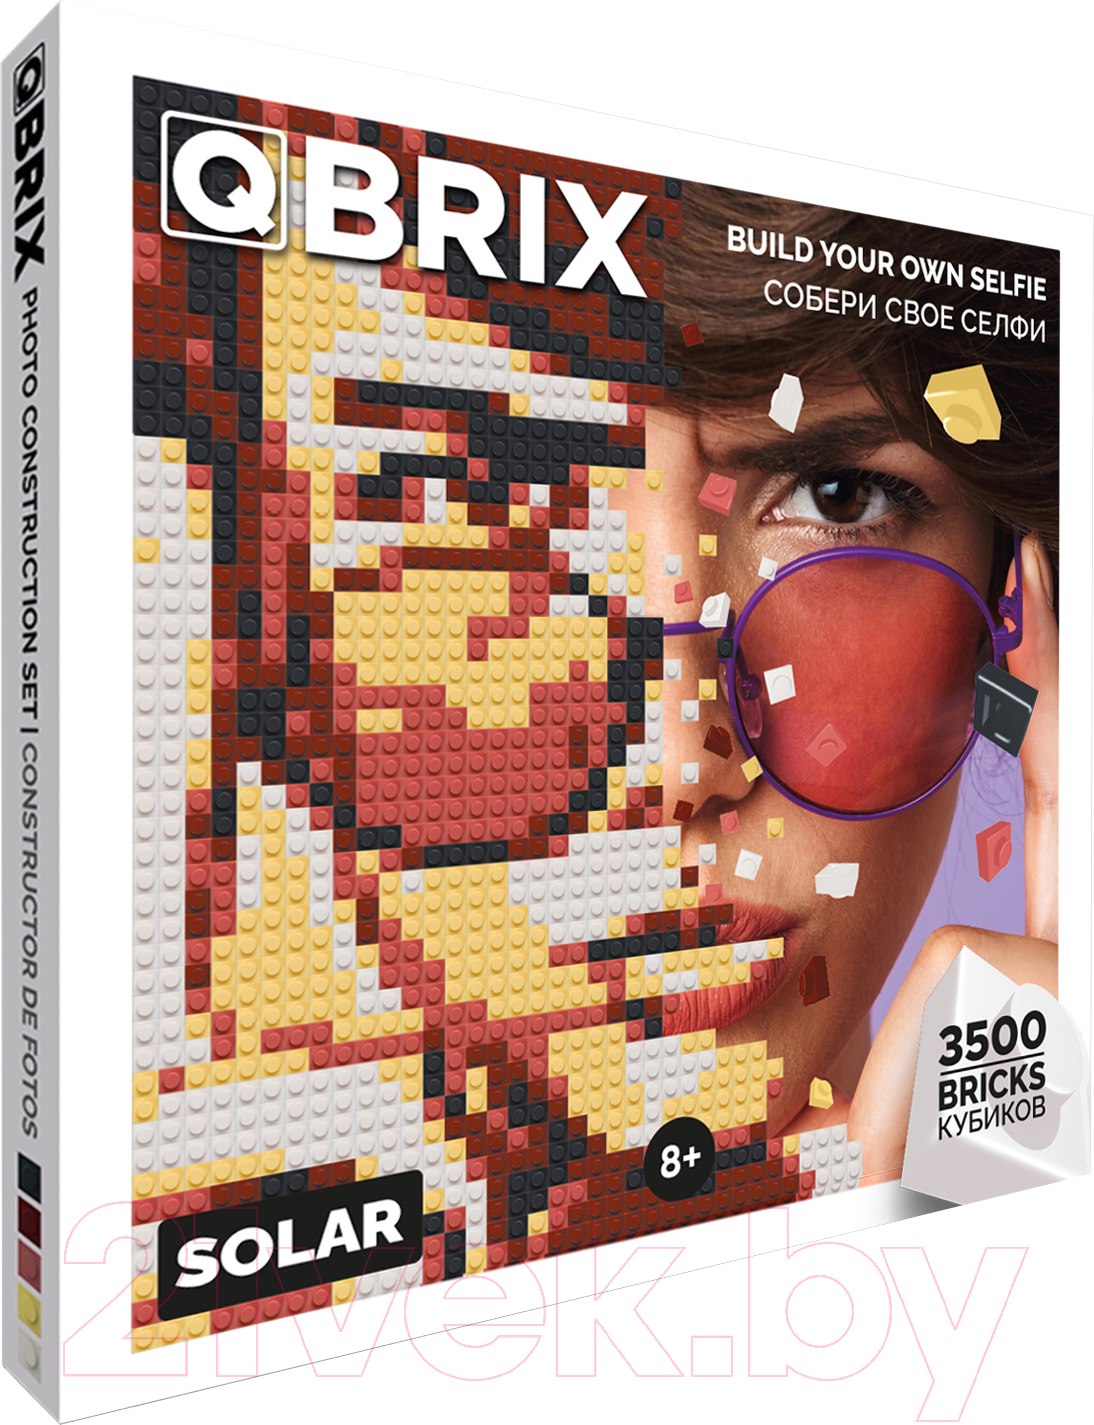 Фото-конструктор QBRIX Solar 50002